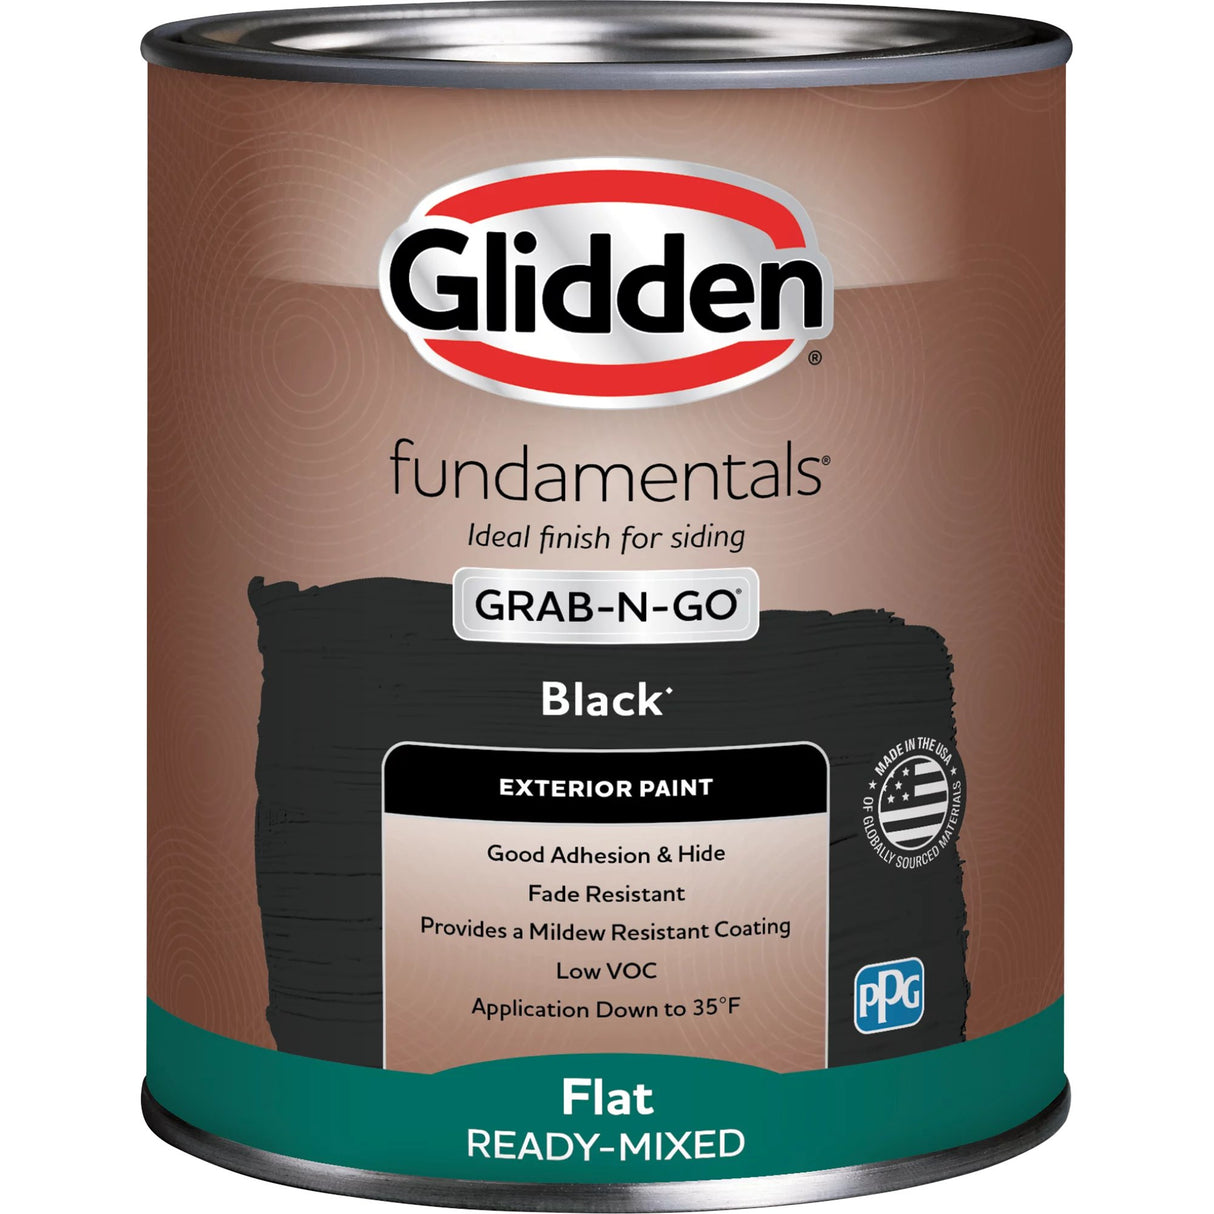 Glidden Fundamentals Grab-N-Go Exterior Paint, Flat (Black, 1-Gallon)